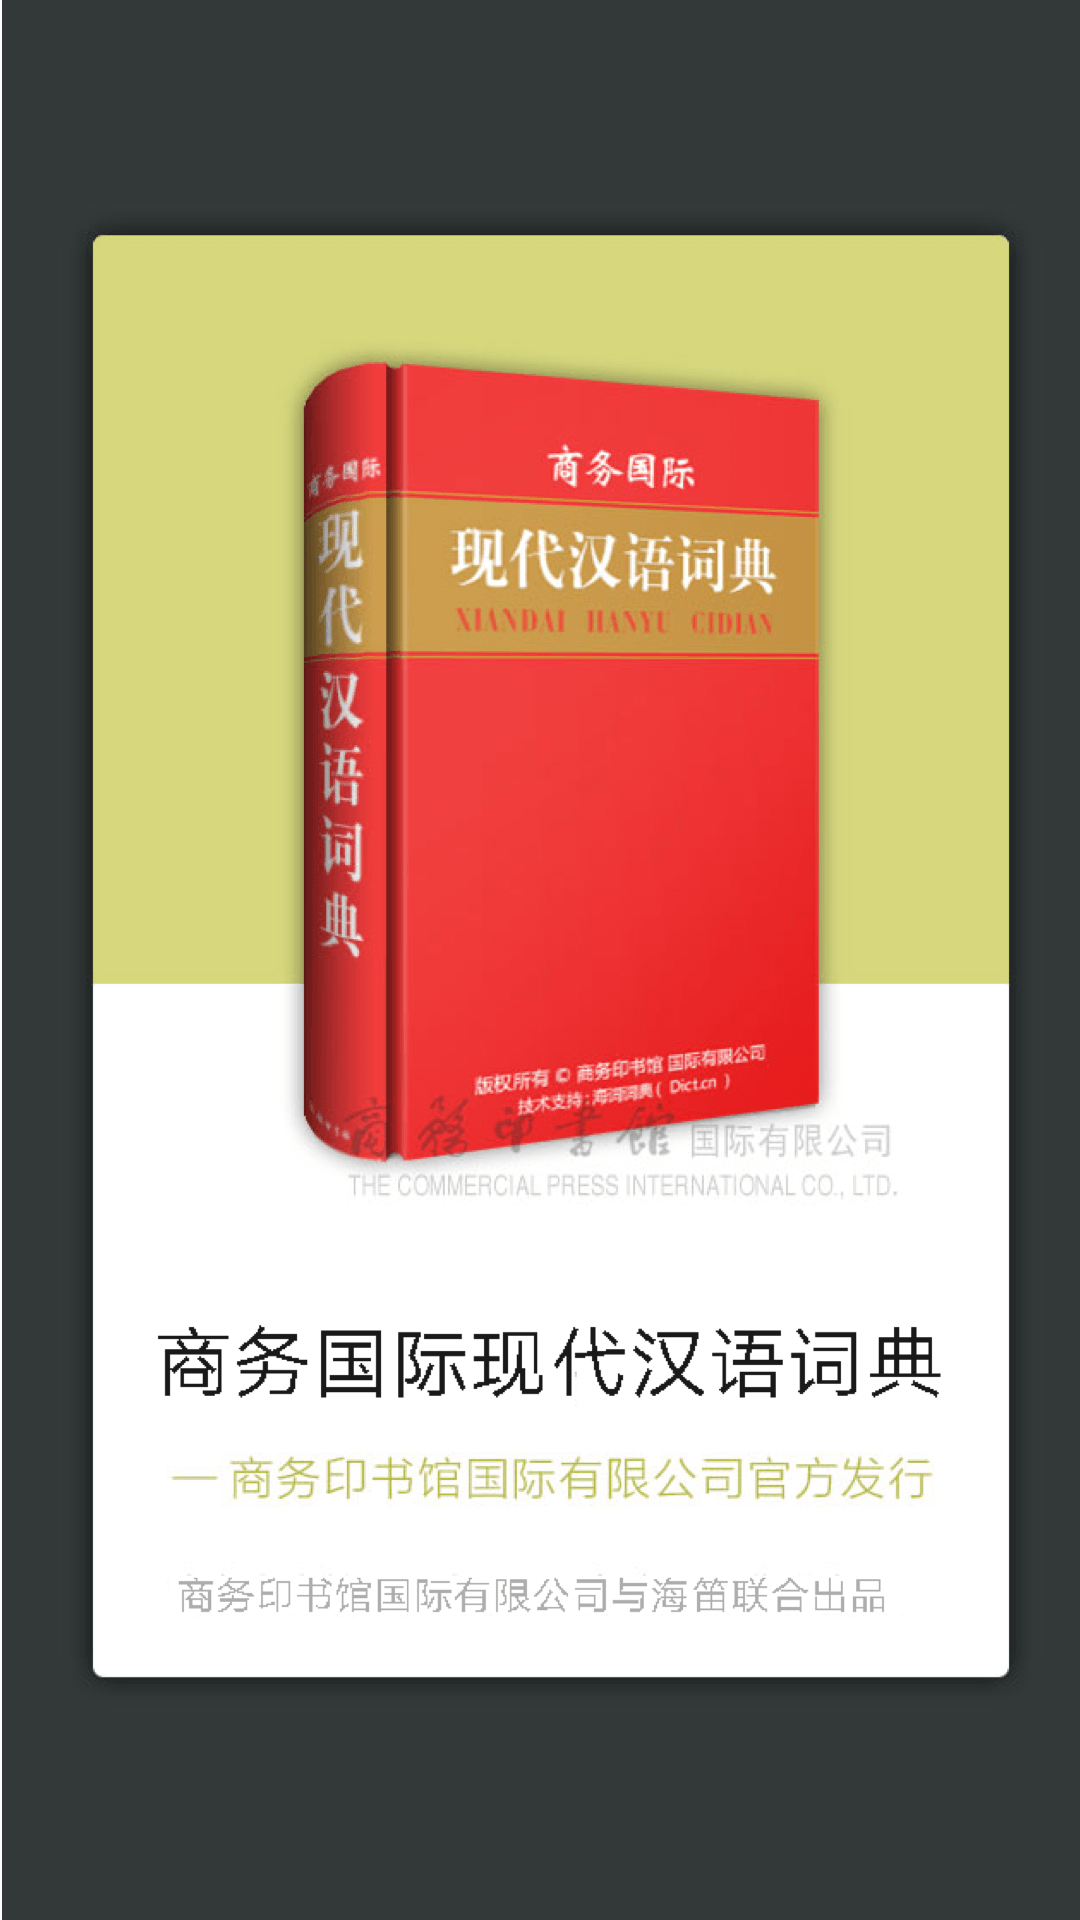 商务国际现代汉语词典截图1